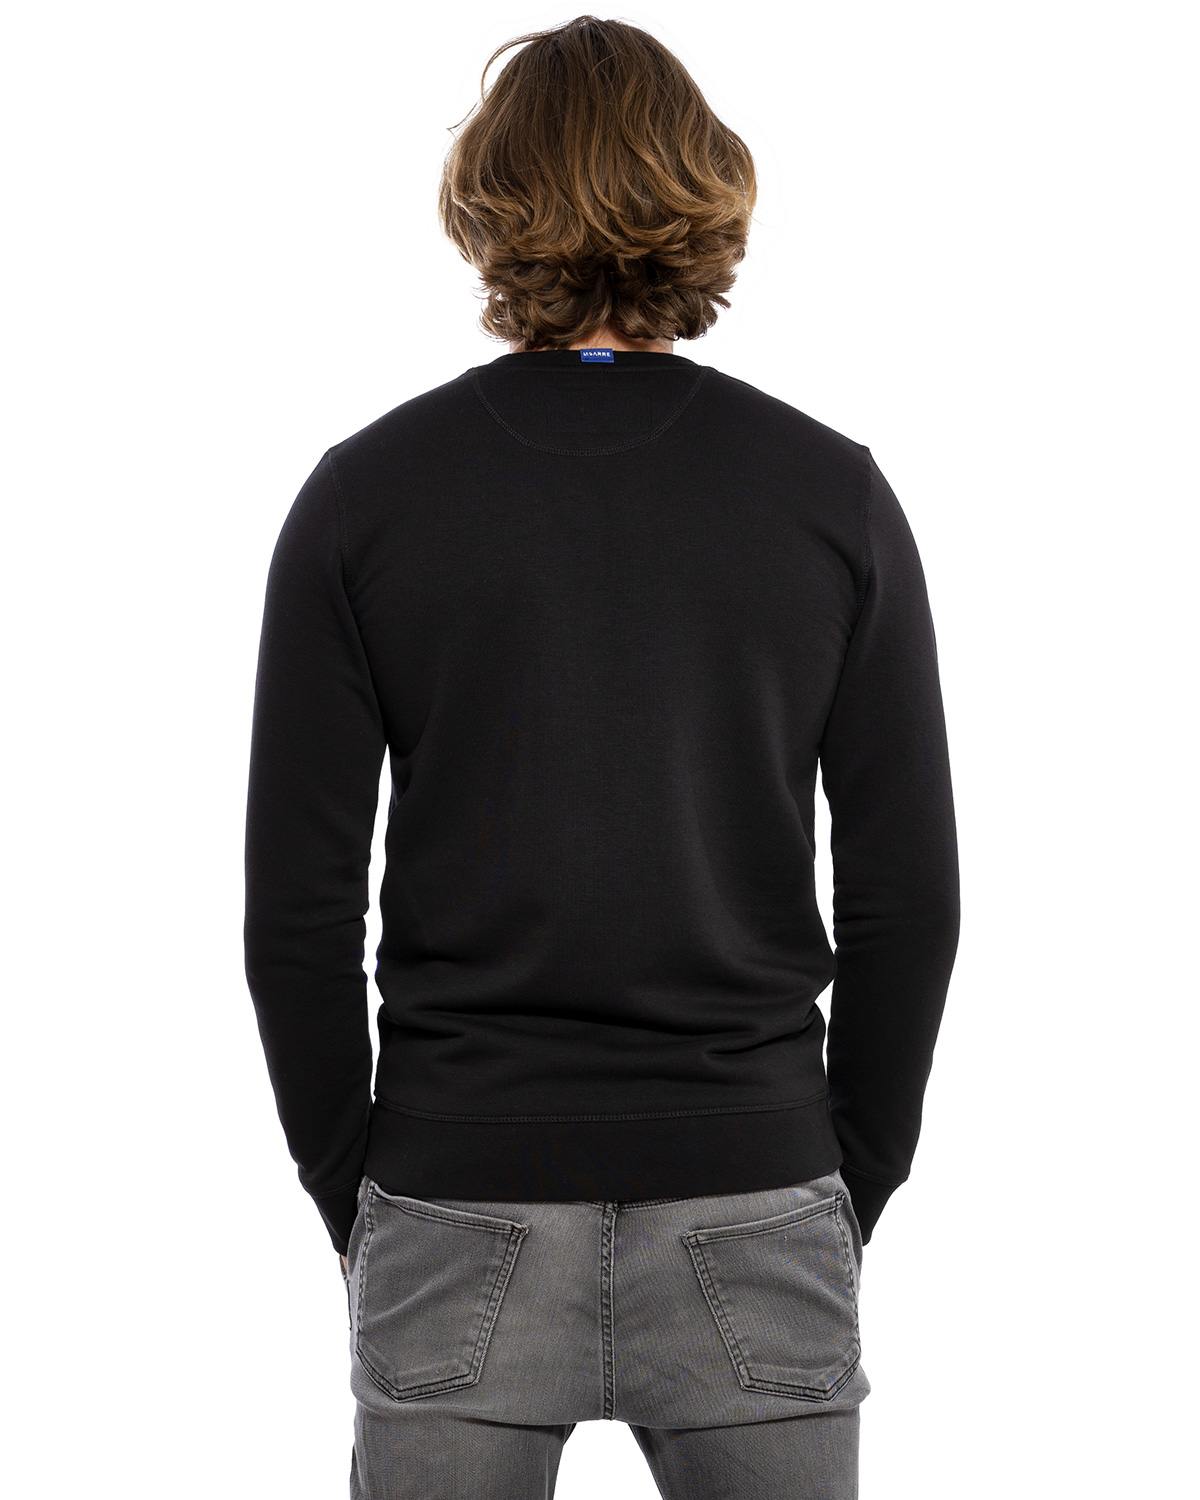 Rücken-Ansicht des hochwertig bestickten dünnen Sweatshirt „ANTON“ für Herren in Schwarz von der Saarland Marke Lasarre mit dem LASARRE Wappen in Blau, Weiß, Rot vorne auf der linken Brust und dem blauen LASARRE Markenzeichen am Saum und im Nackenbereich